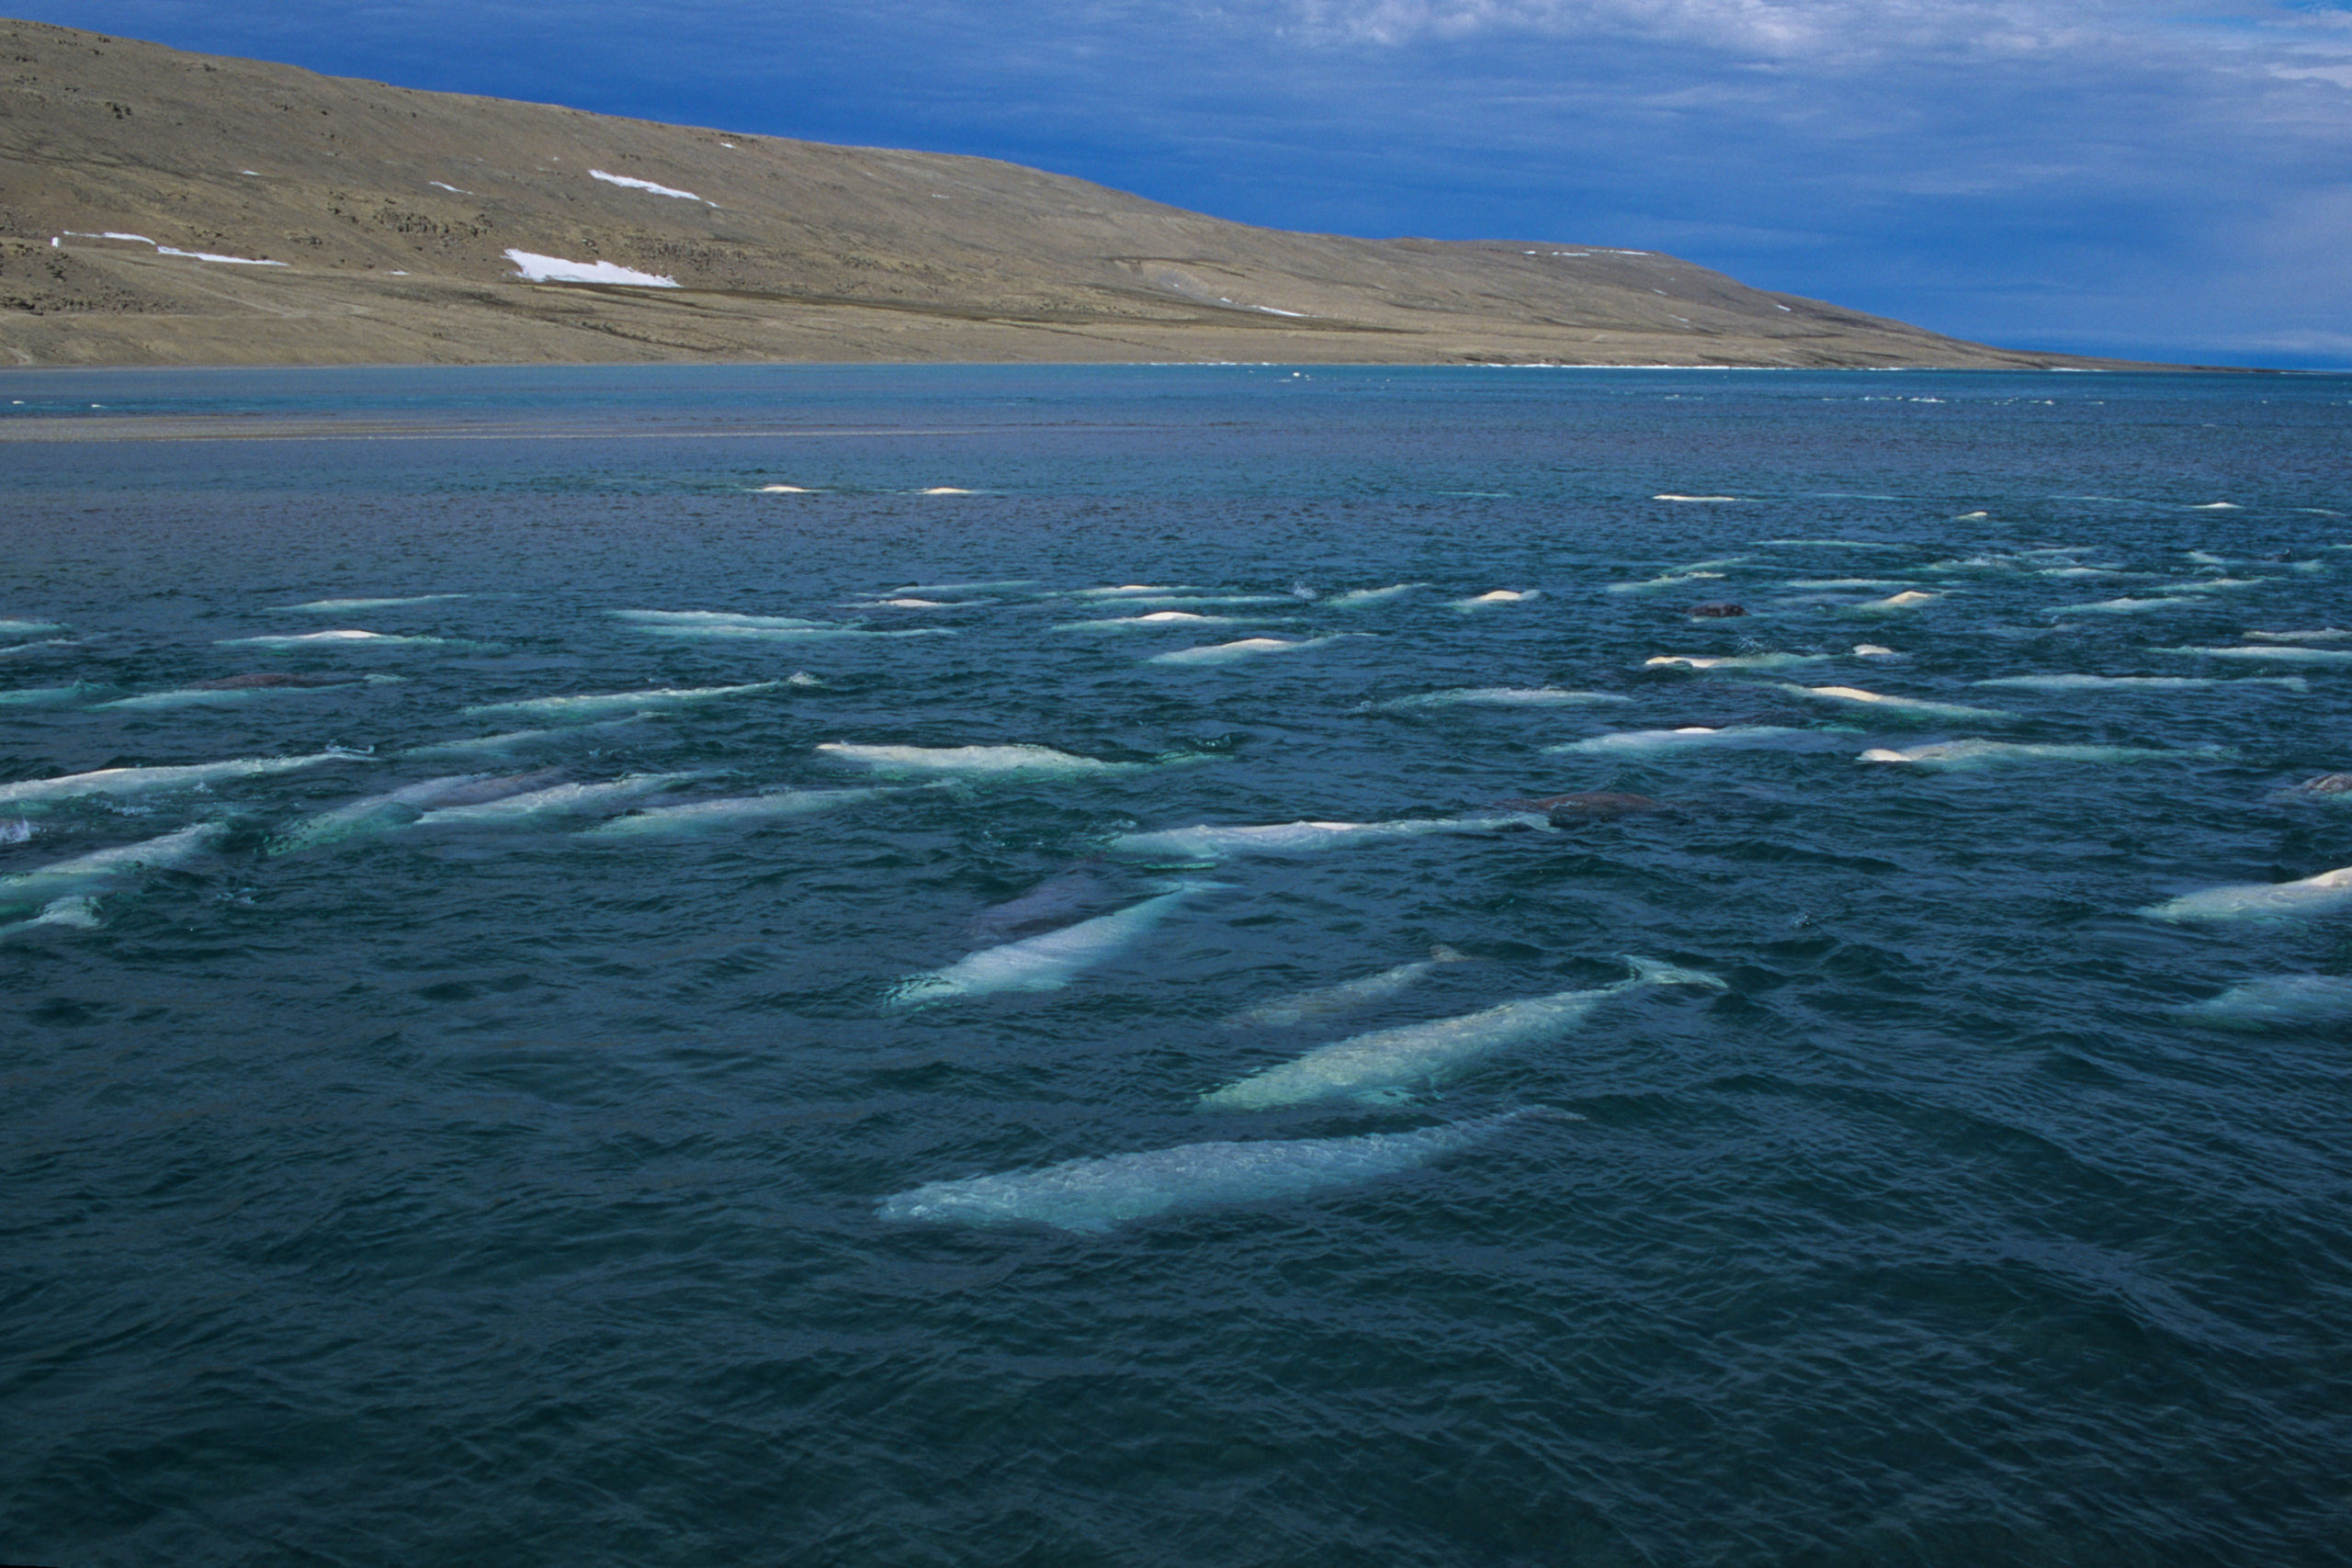 Large pod of Beluga / White Whale near headland. Canadian Arctic, summer.